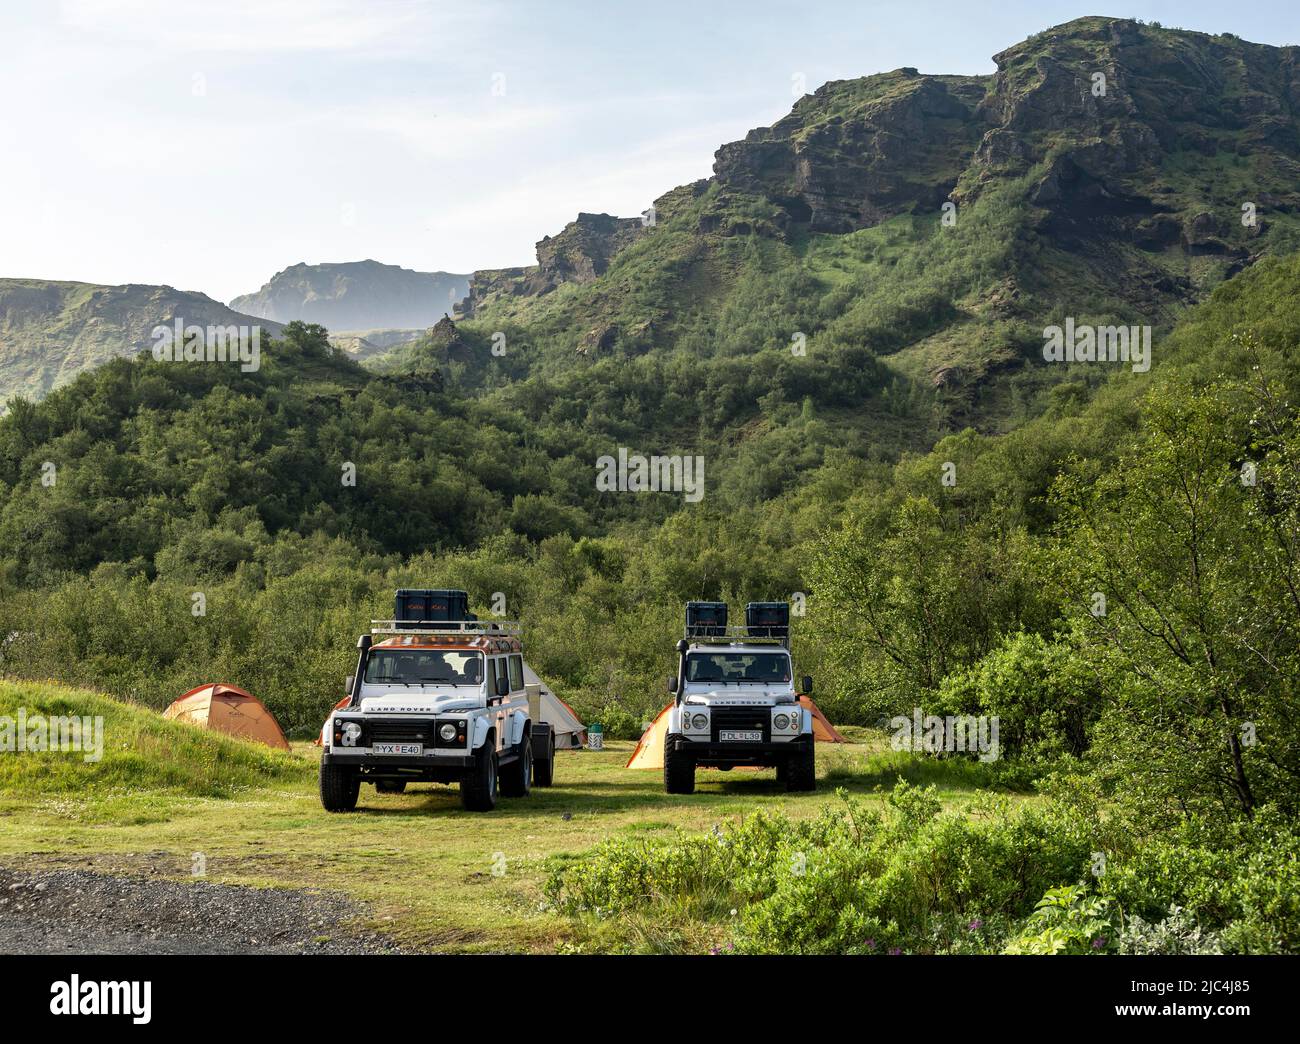 Deux véhicules tout-terrain Land Rover blancs sur un camping avec tentes, Camping Basar, Réserve naturelle de Porsmoerk, Suourland, Islande Banque D'Images